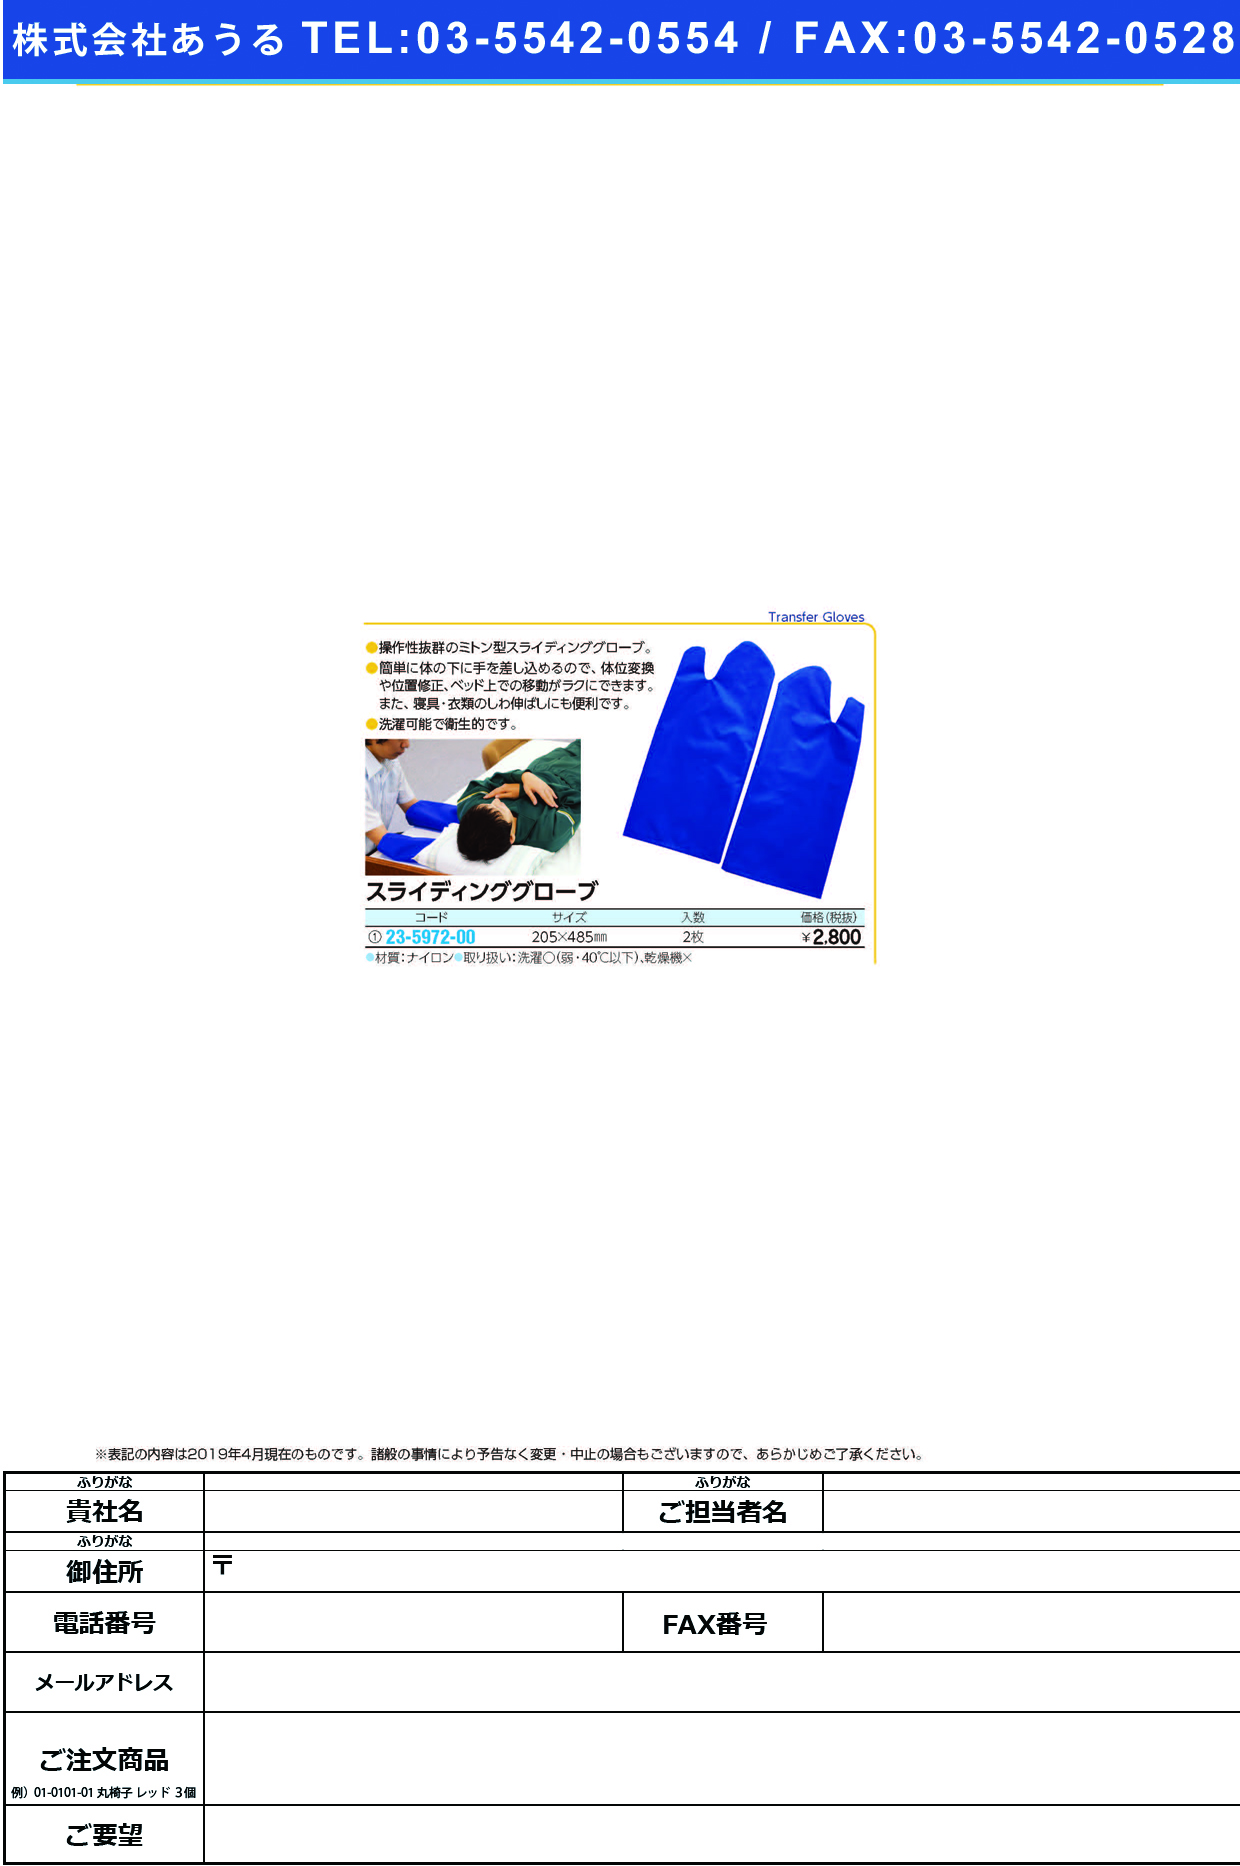 (23-5972-00)スライディンググローブ 205X485MM ｽﾗｲﾃﾞｨﾝｸﾞｸﾞﾛｰﾌﾞ【1組単位】【2019年カタログ商品】